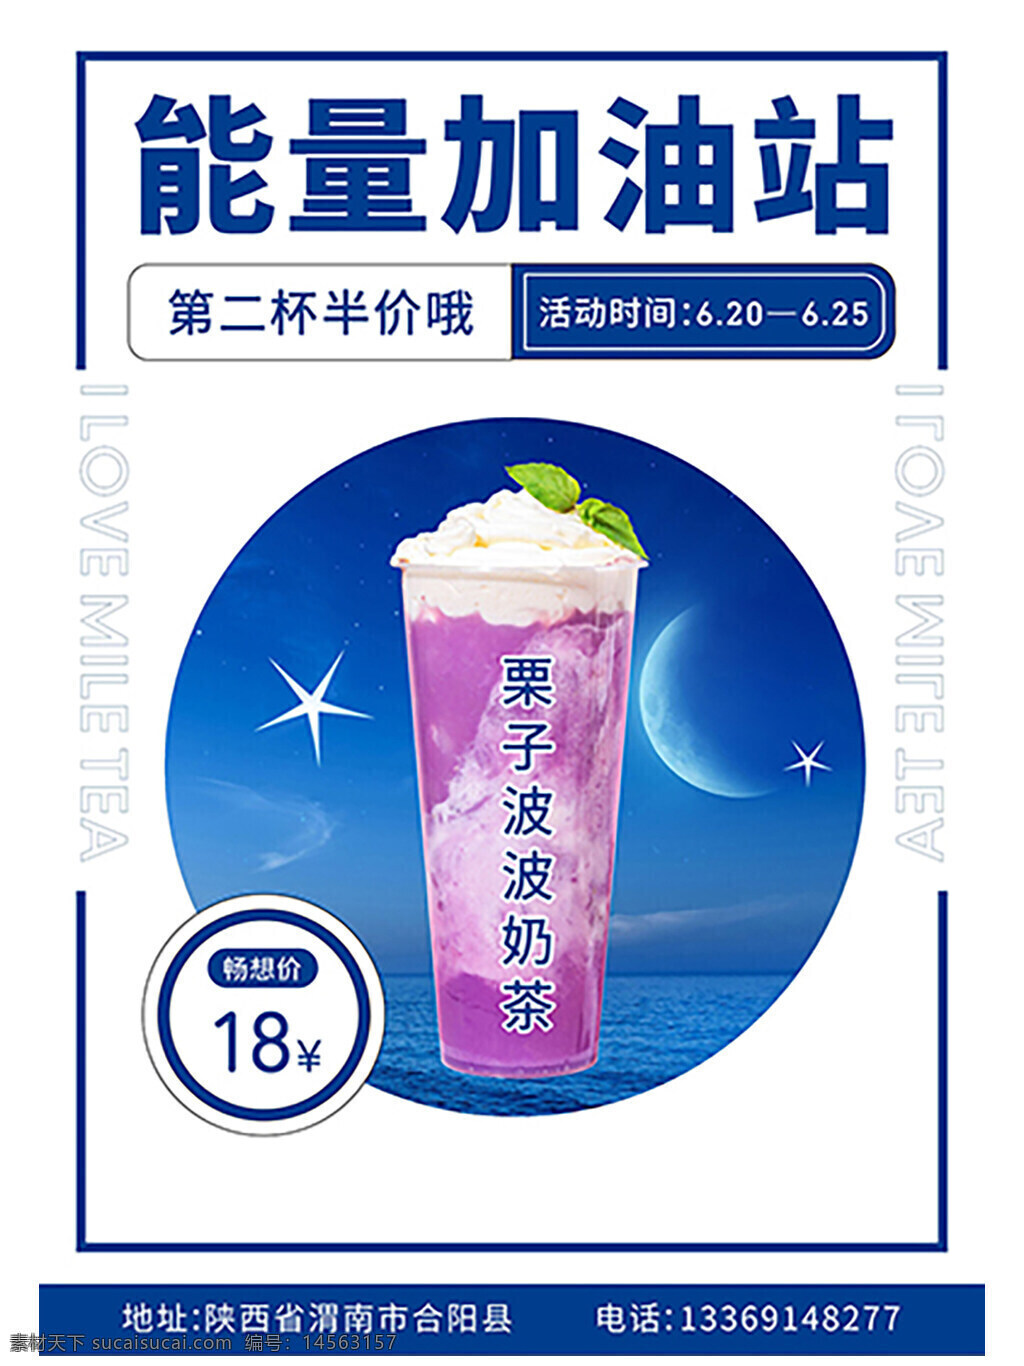 奶茶半价 传单 能量加油站 海报 第二杯半价 奶茶促销活动